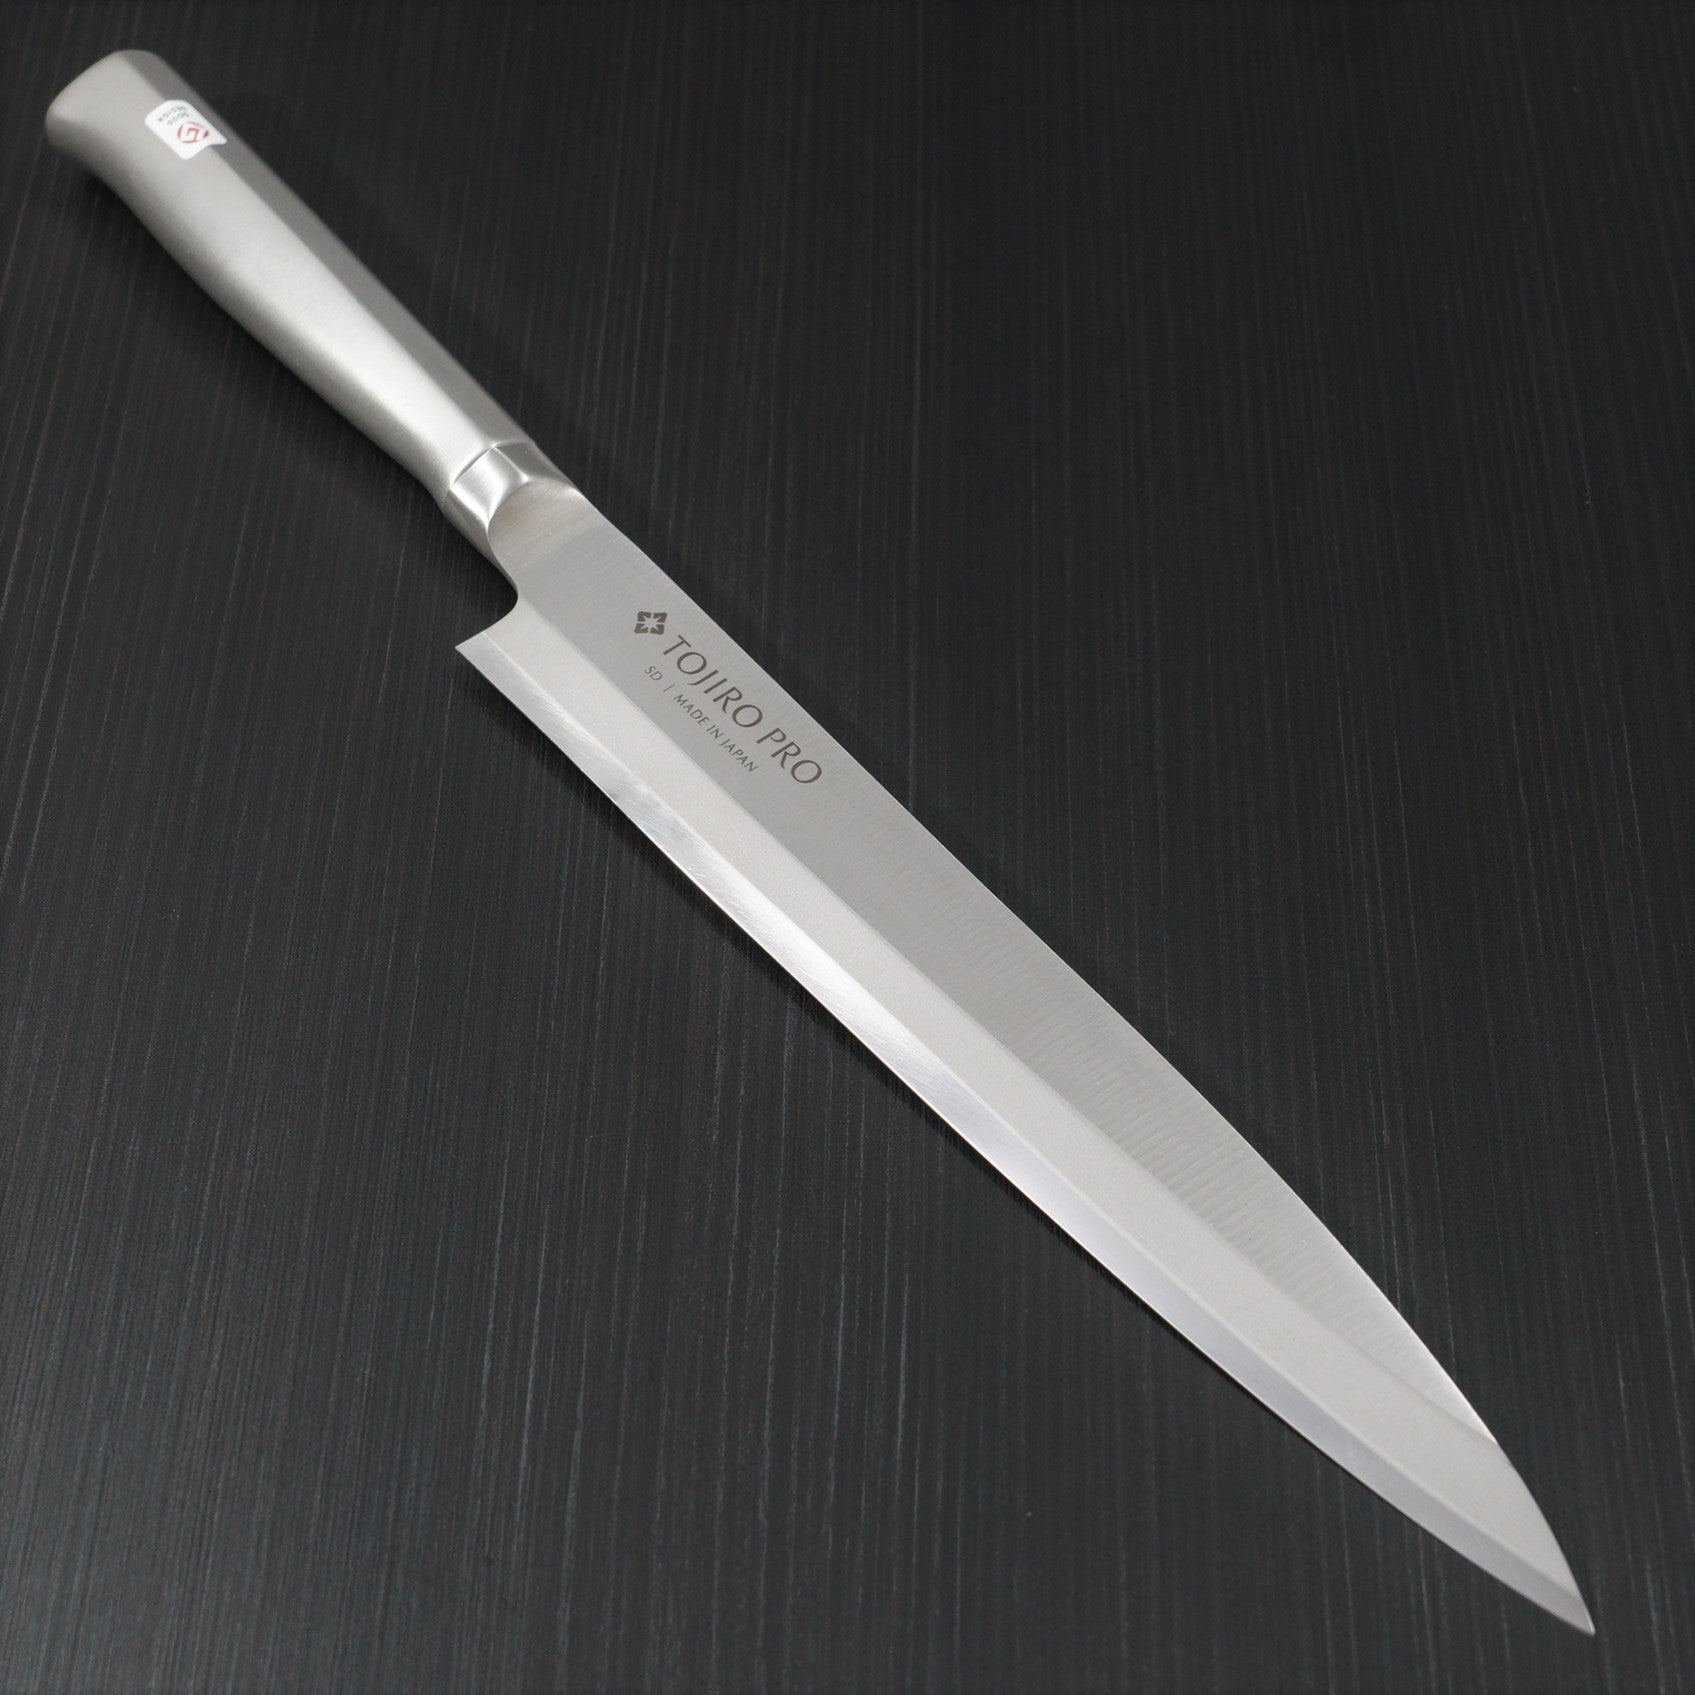 Professional Japanese Sashimi Sushi Knife Stainless Steel Sashimi